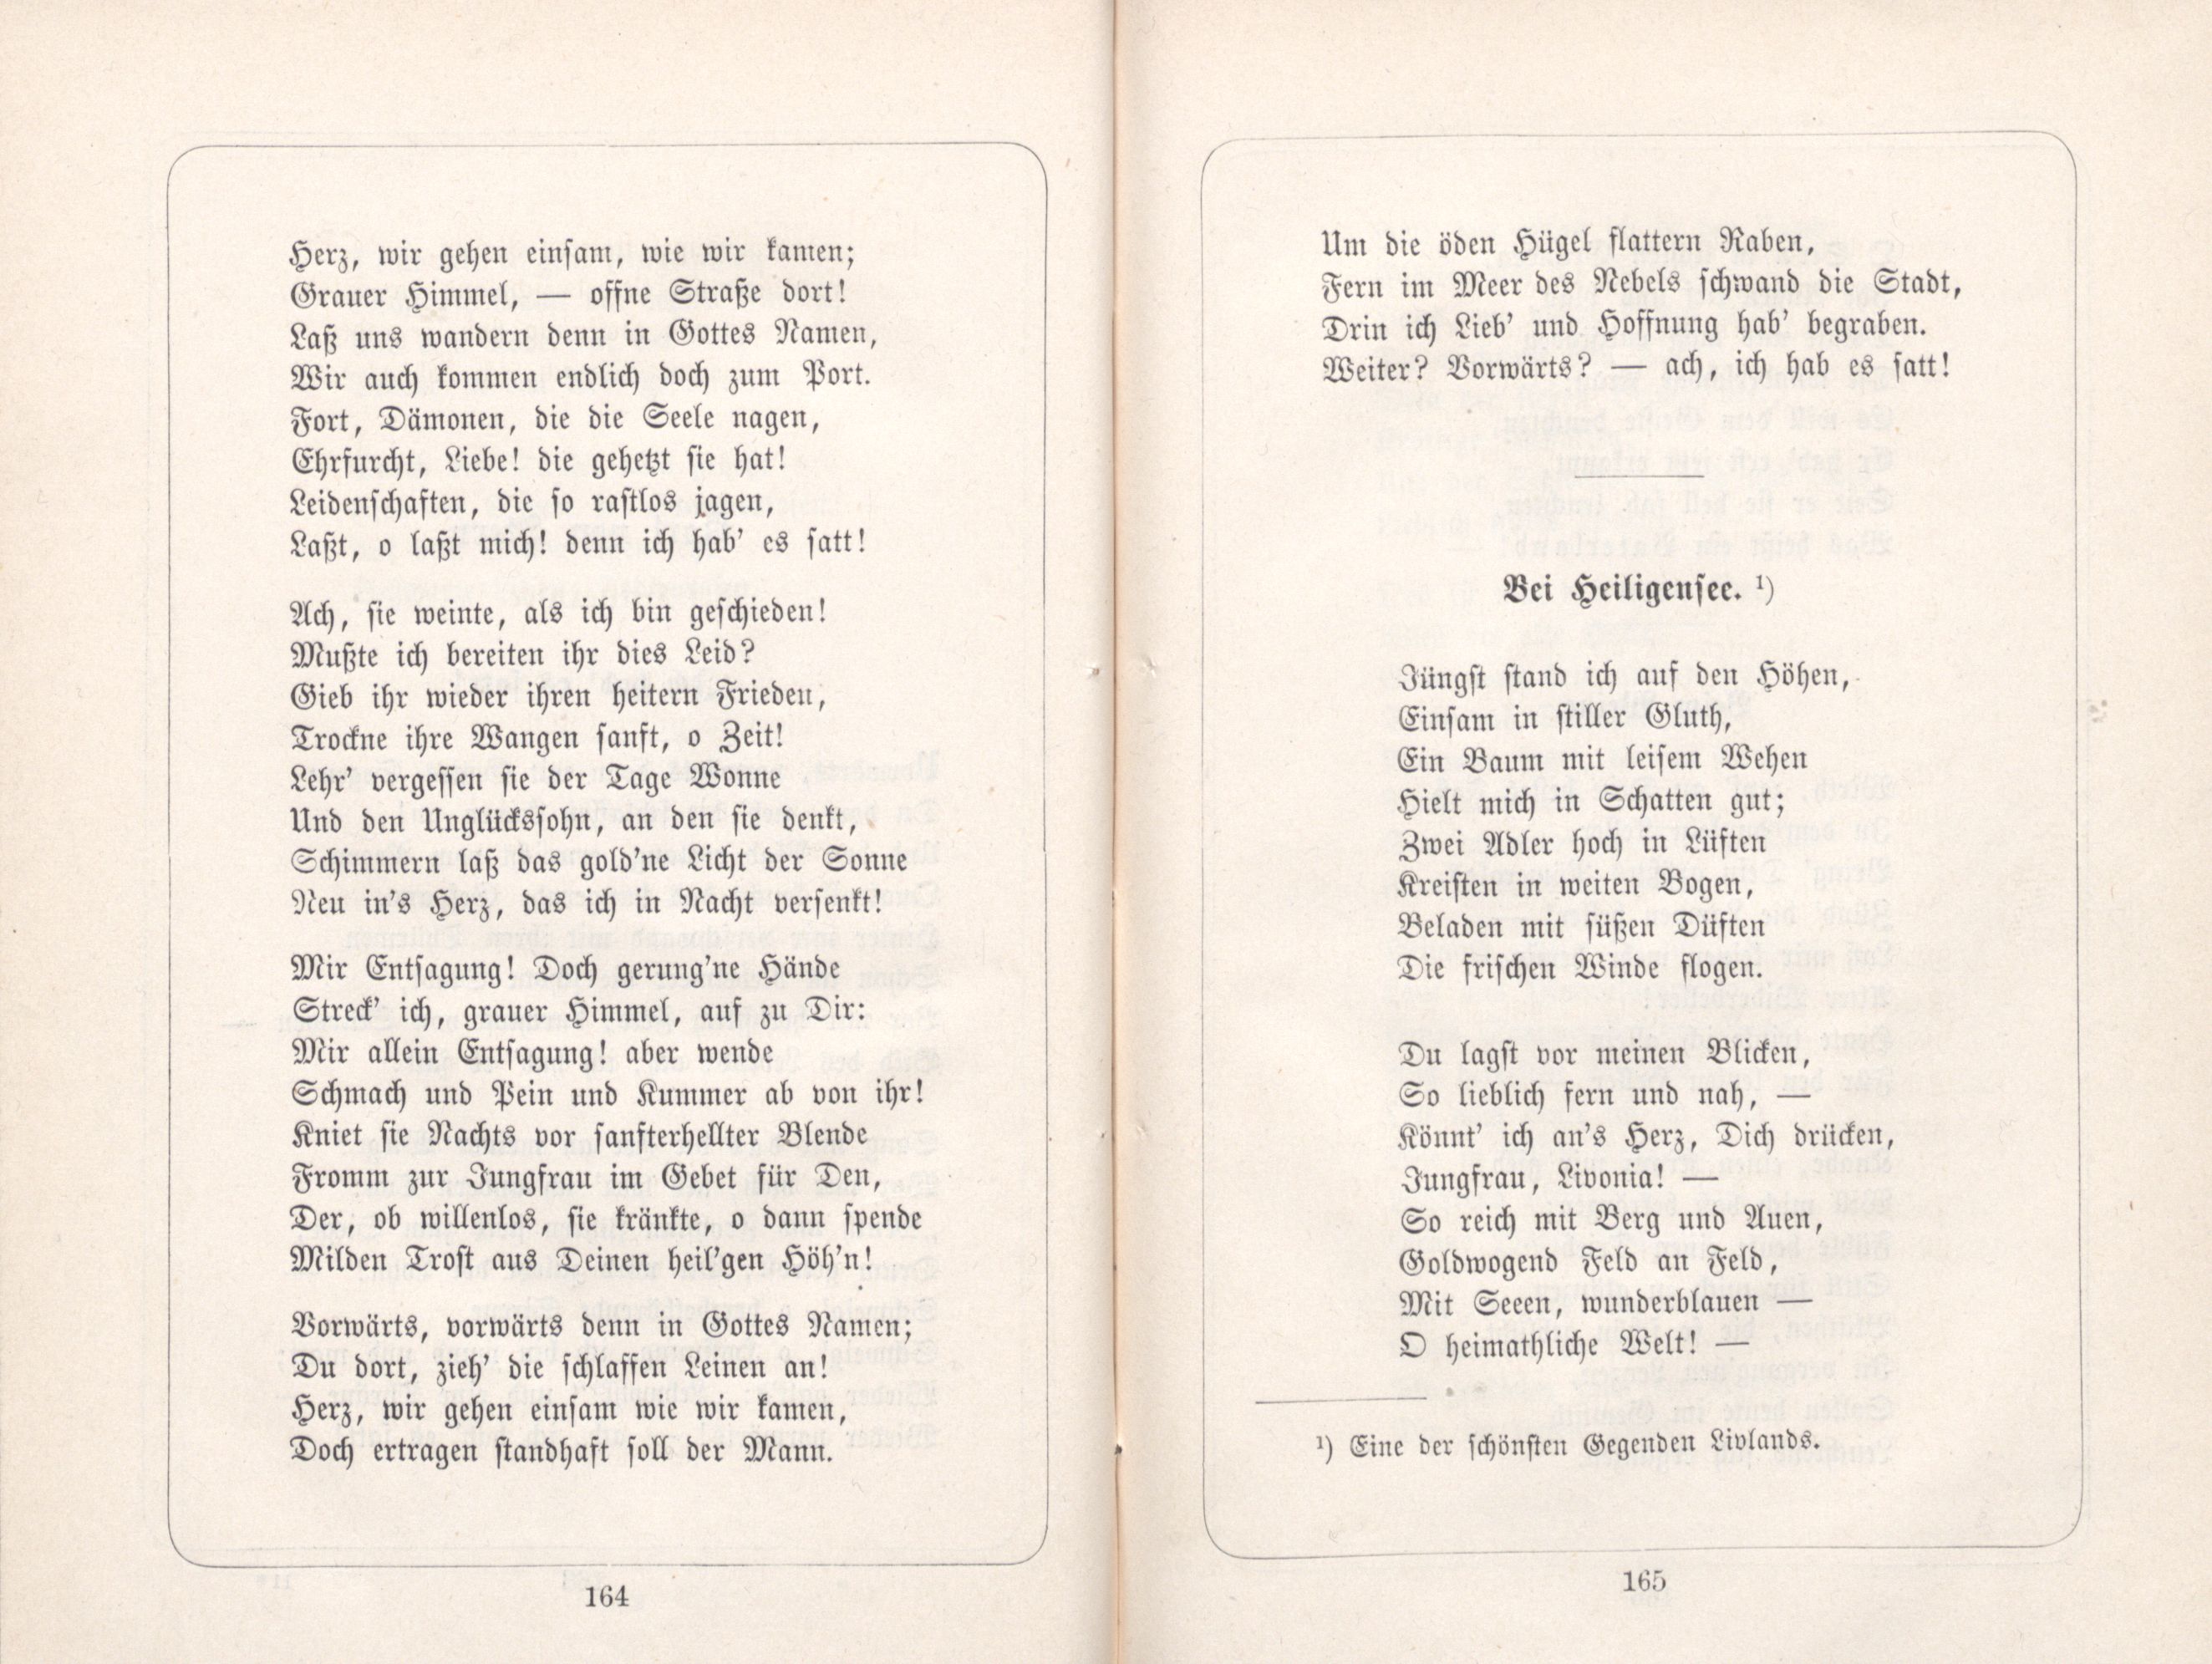 Dichterstimmen aus Baltischen Landen (1885) | 90. (164-165) Main body of text